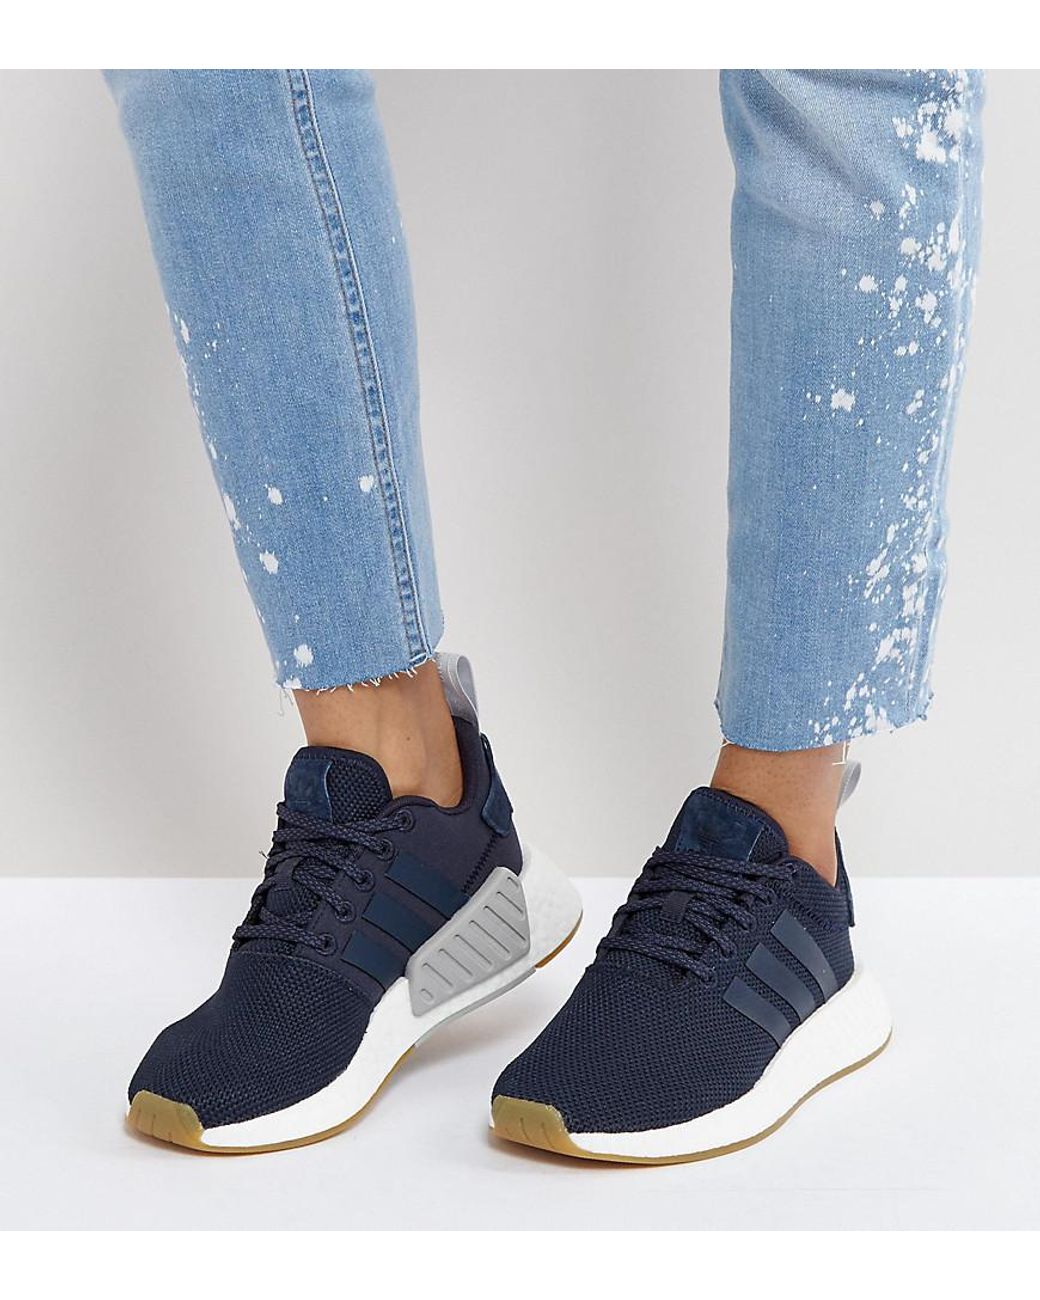 Women's Navy Blue Adidas Shoes - Shoe Effect